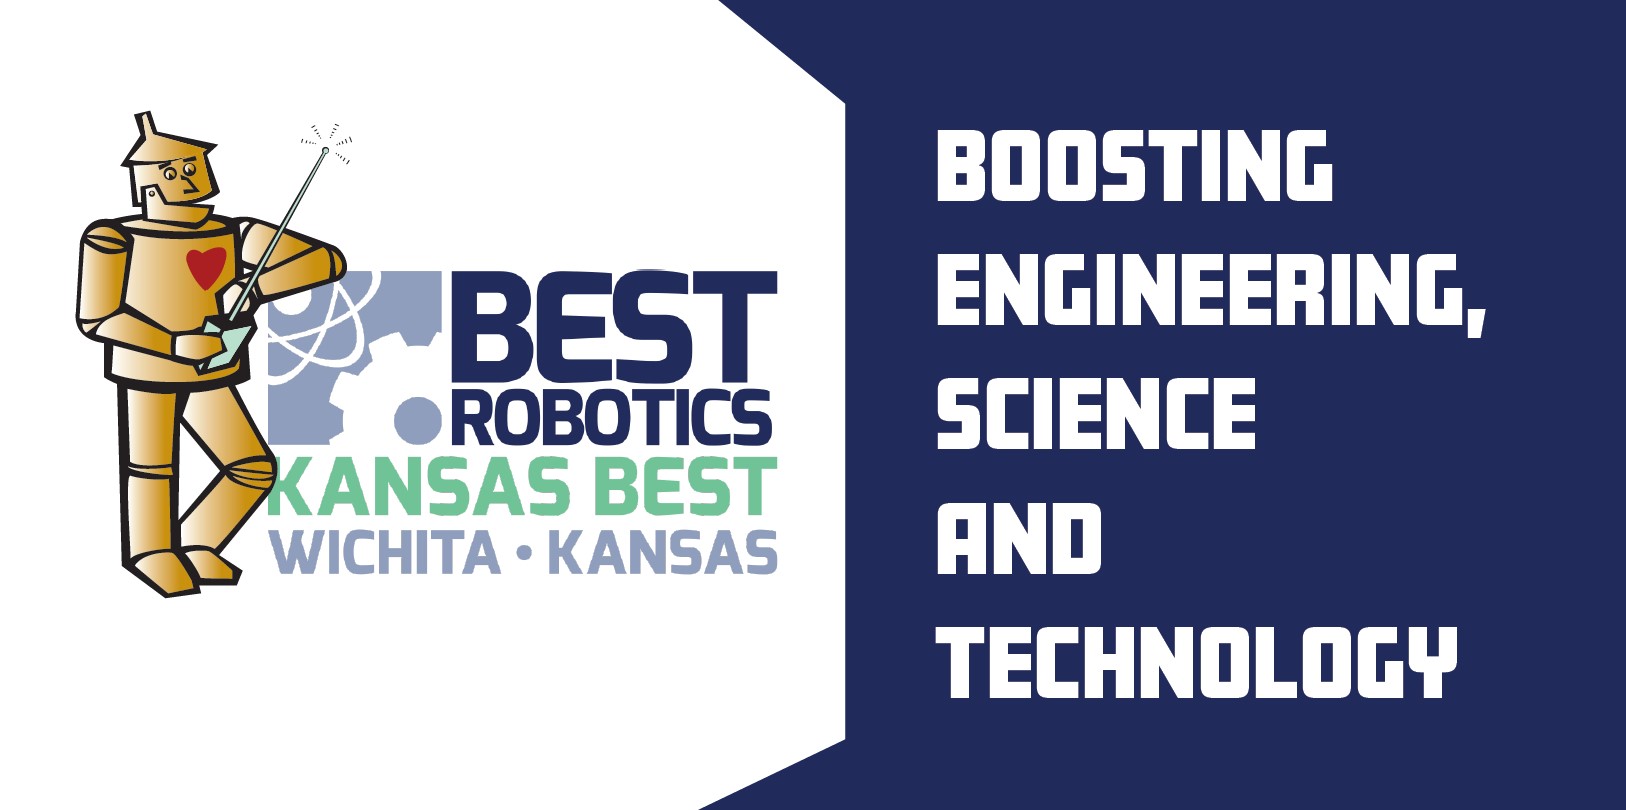 Kansas BEST Robotics